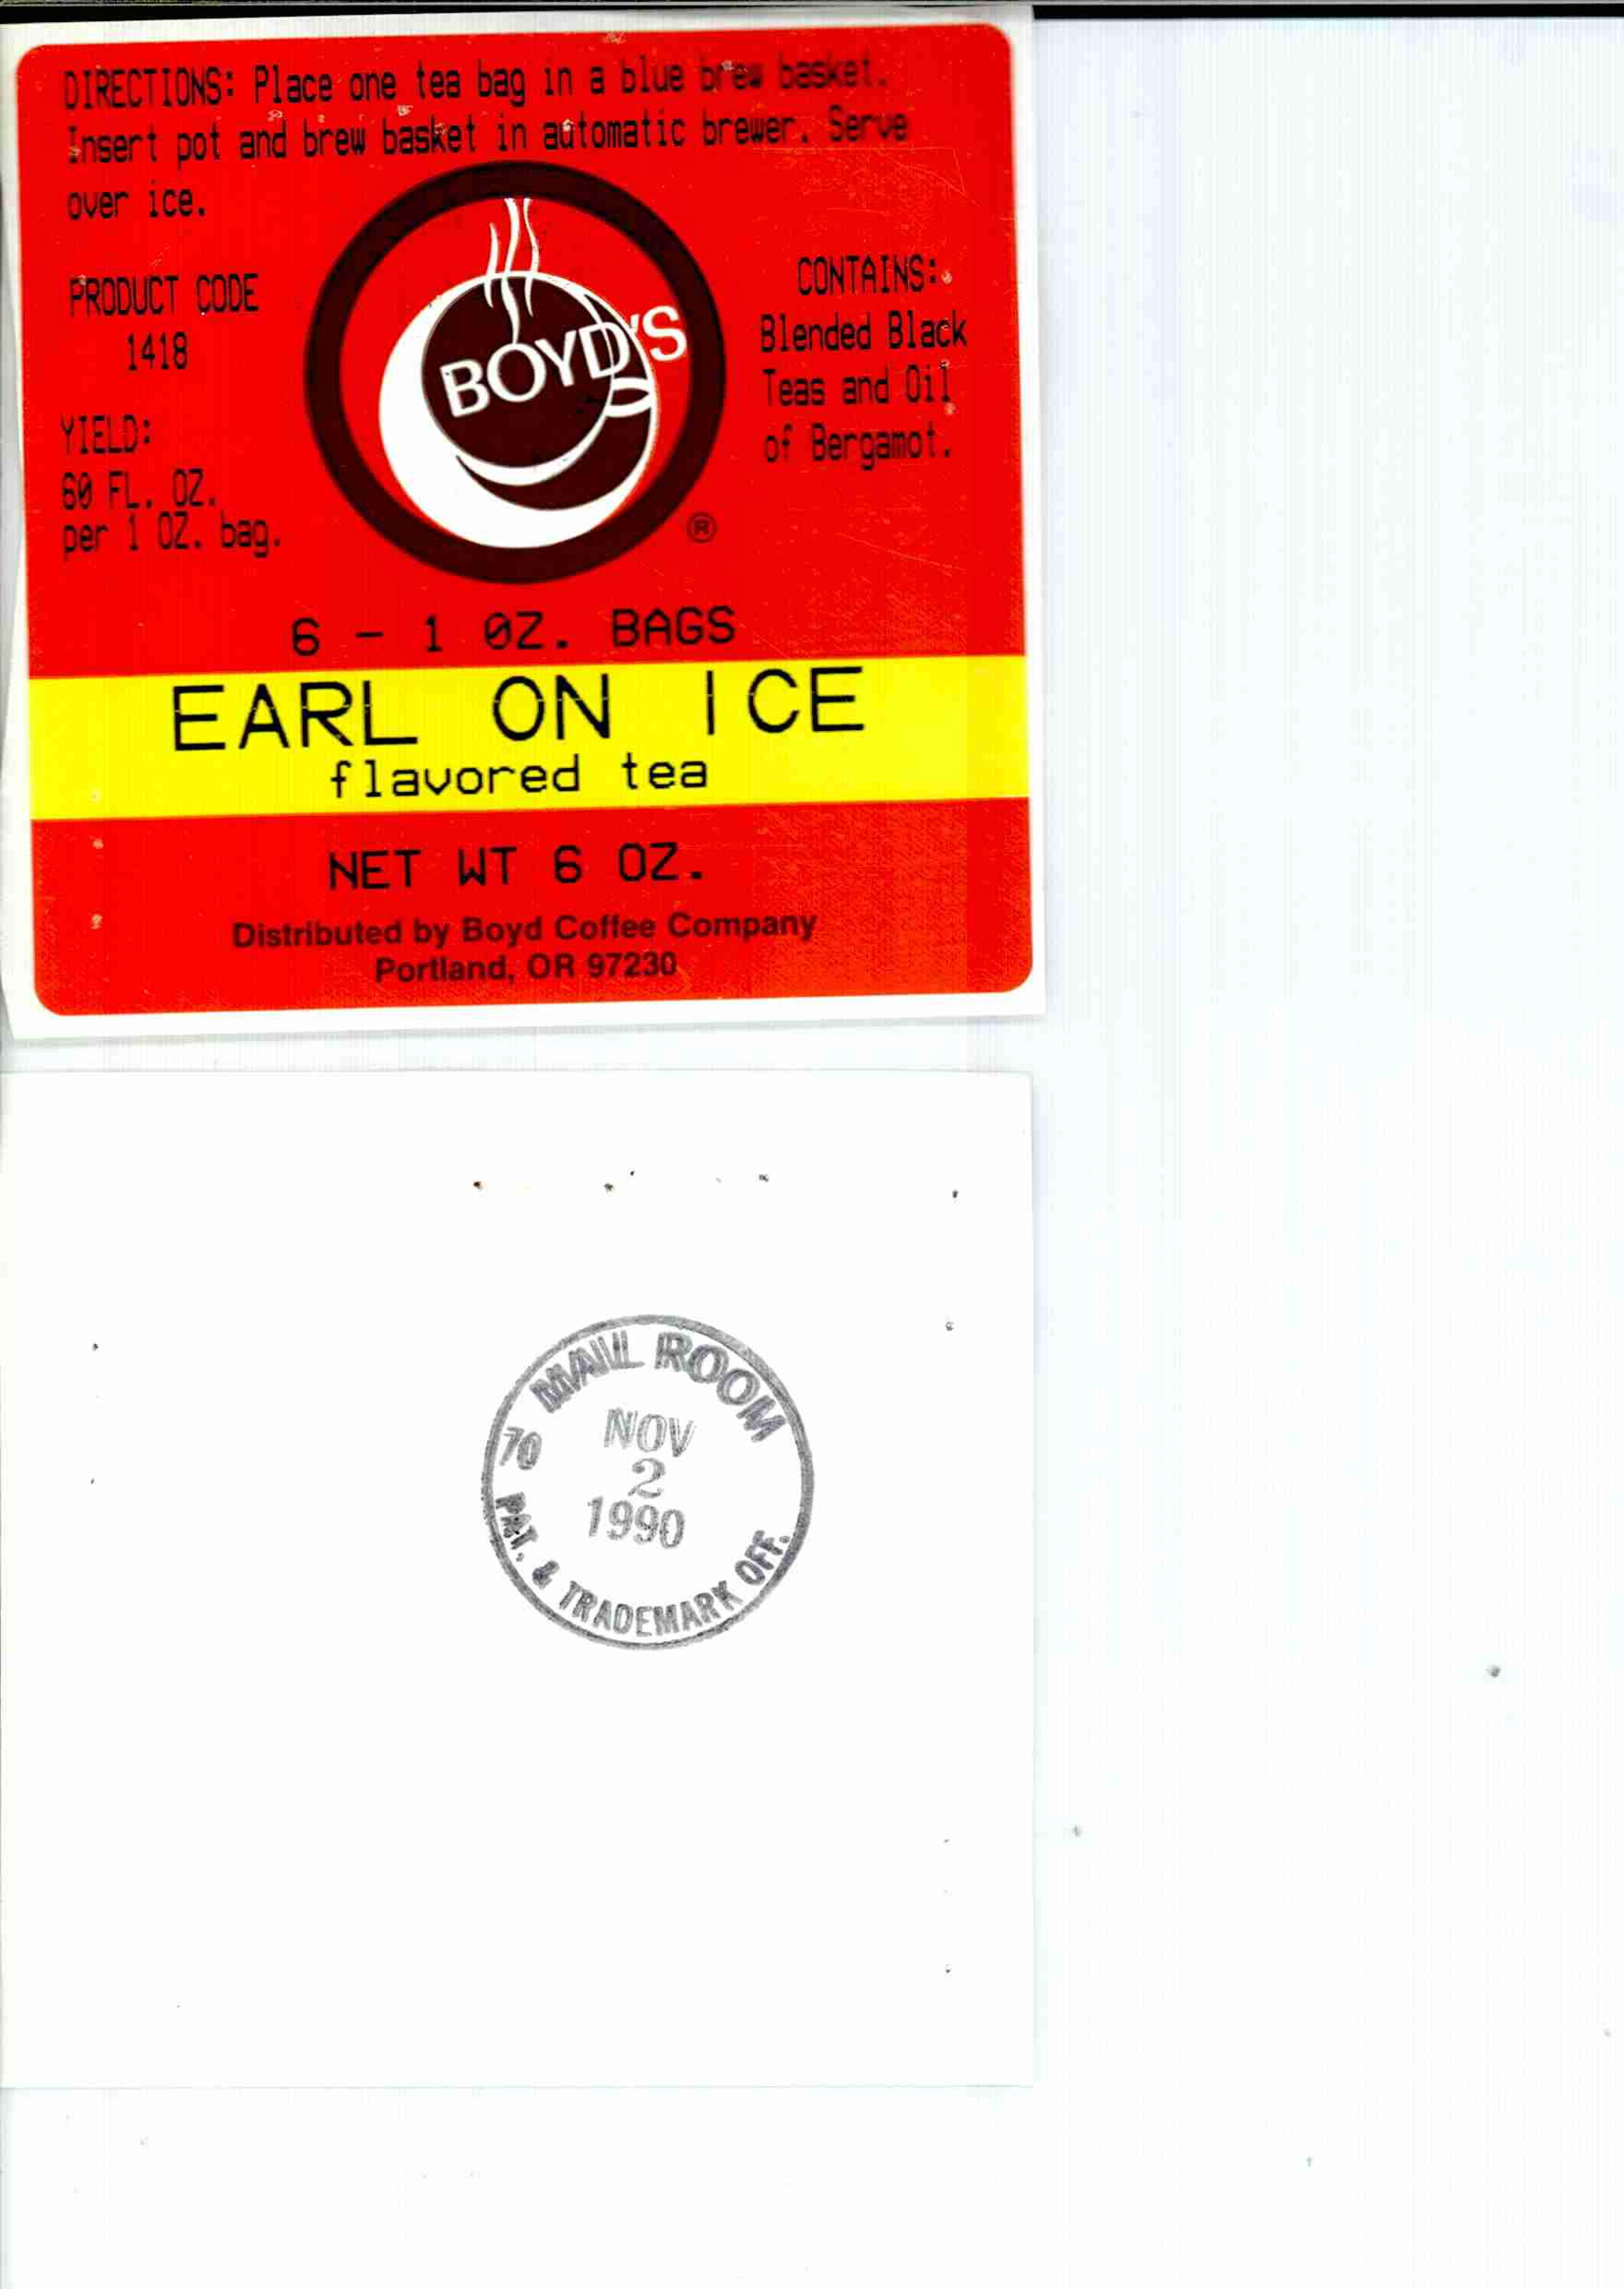  EARL ON ICE